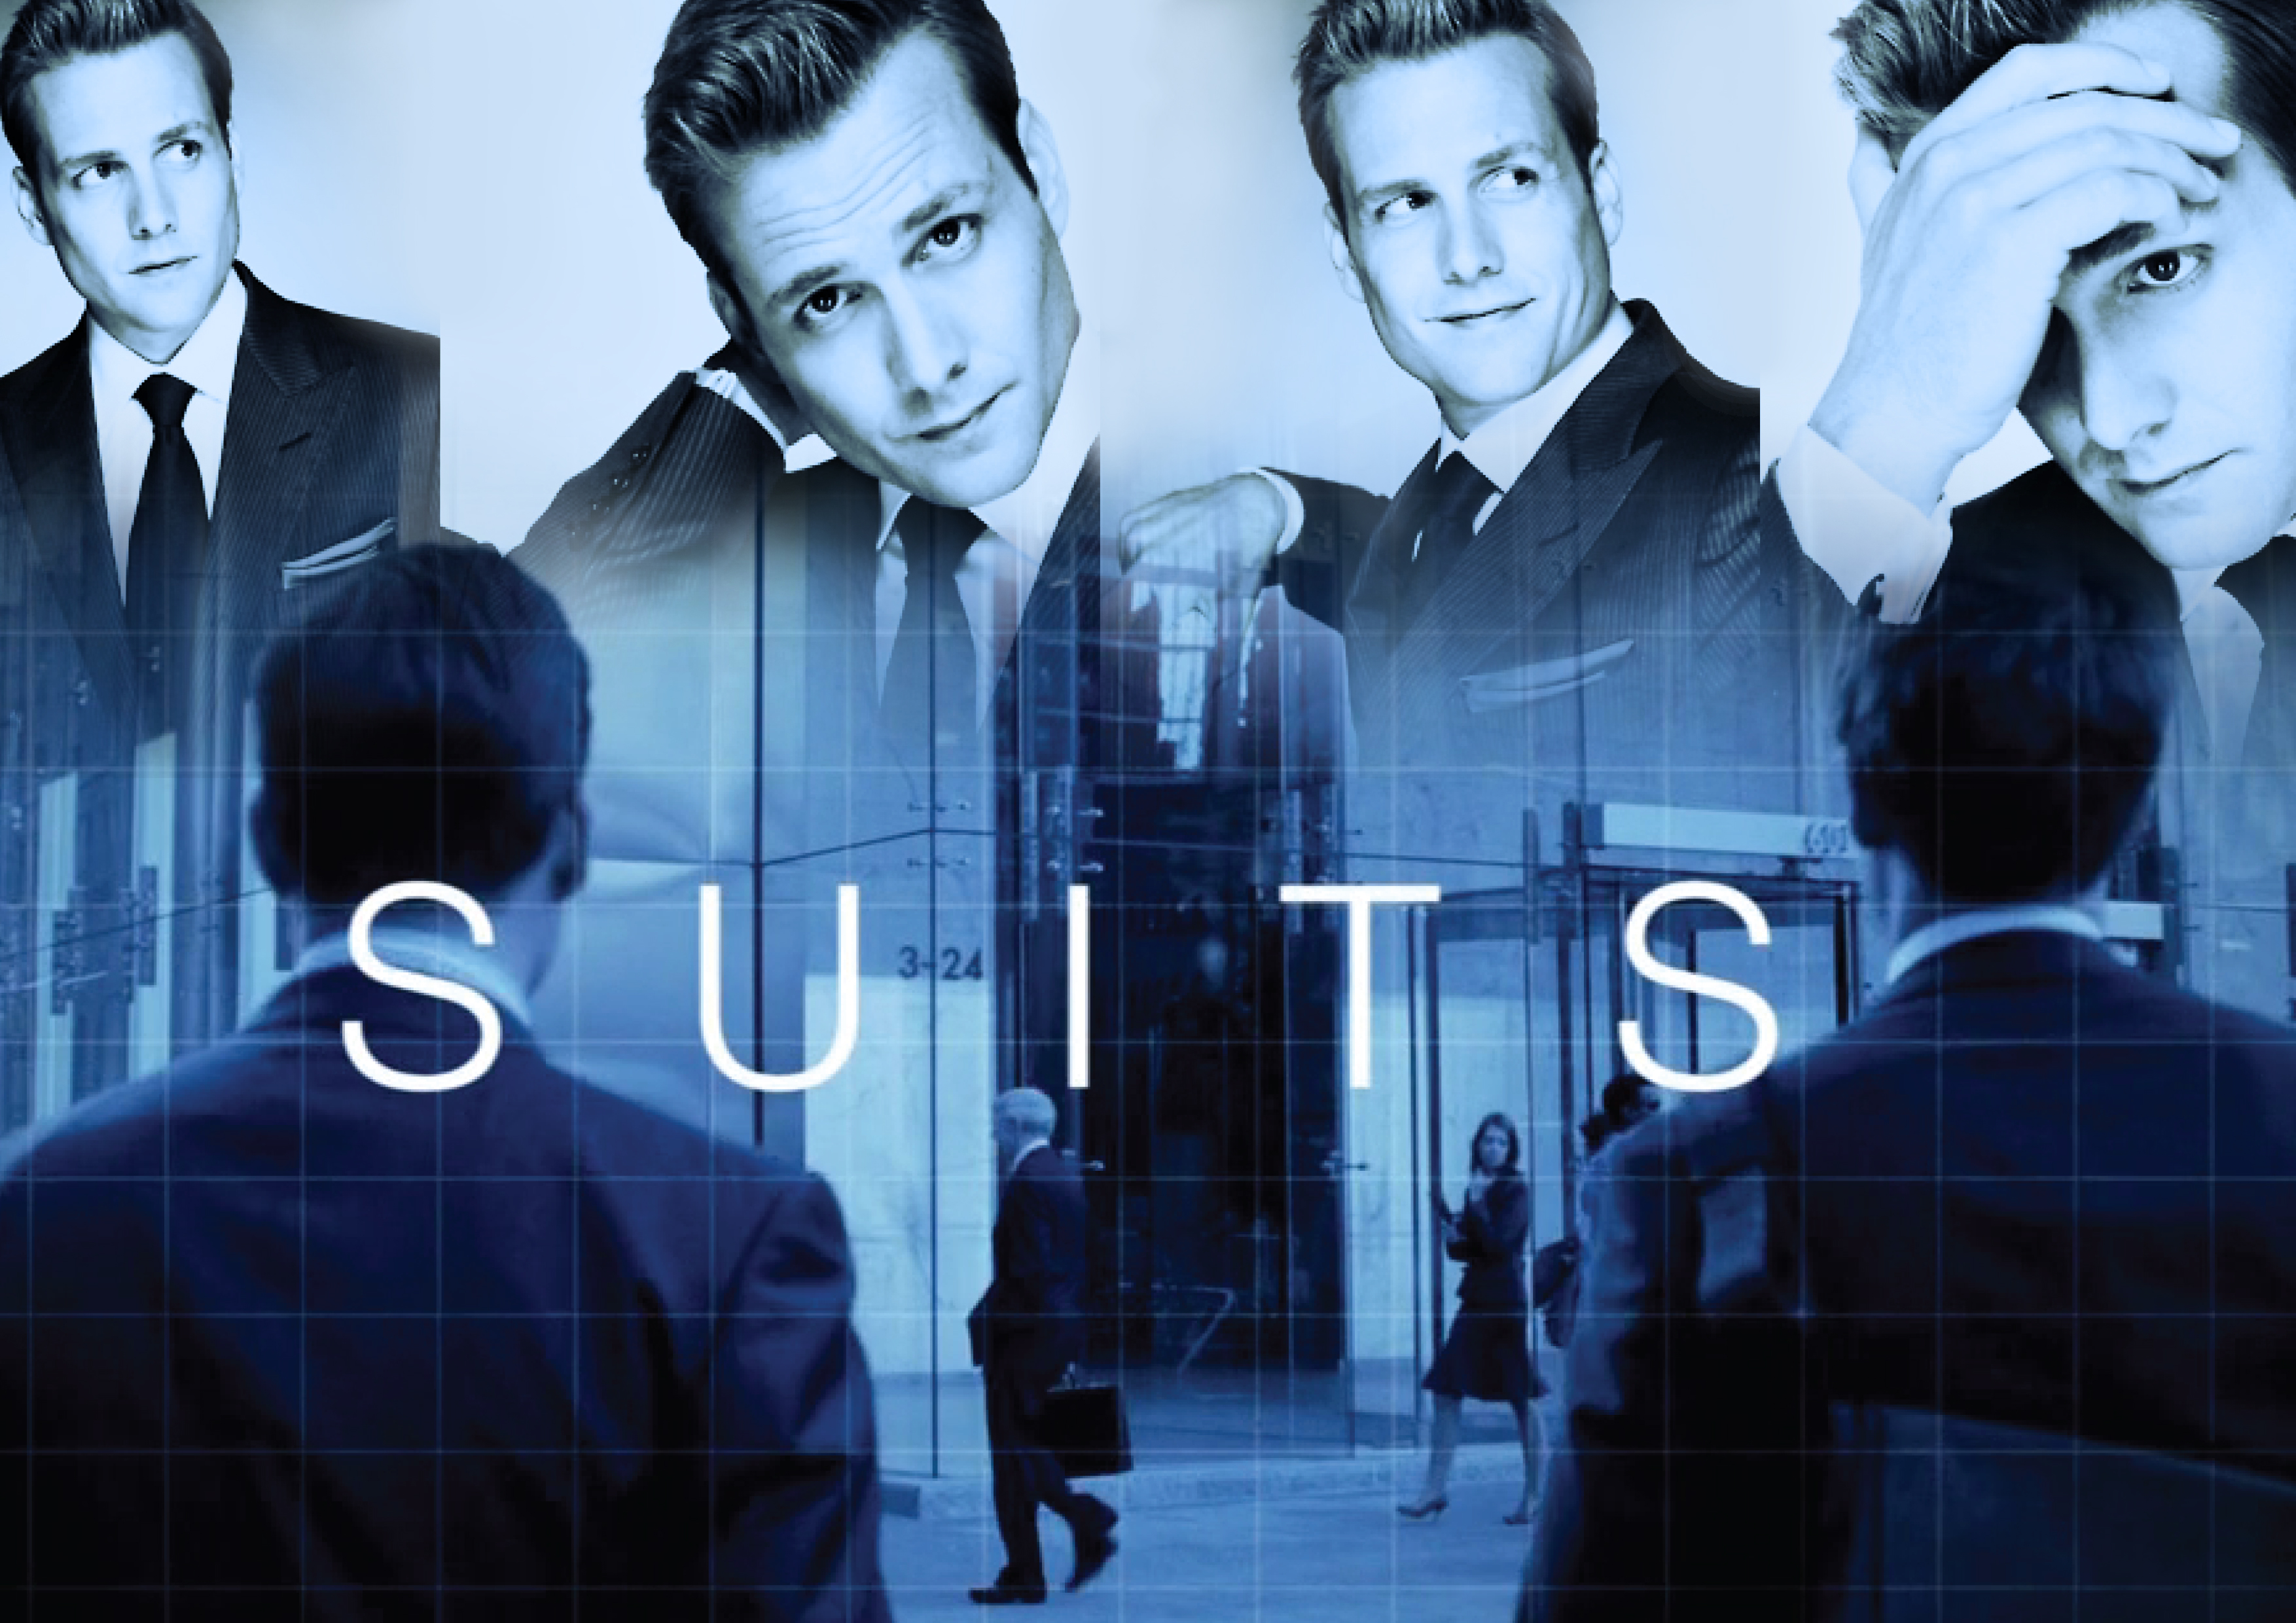 Suits Tv Show